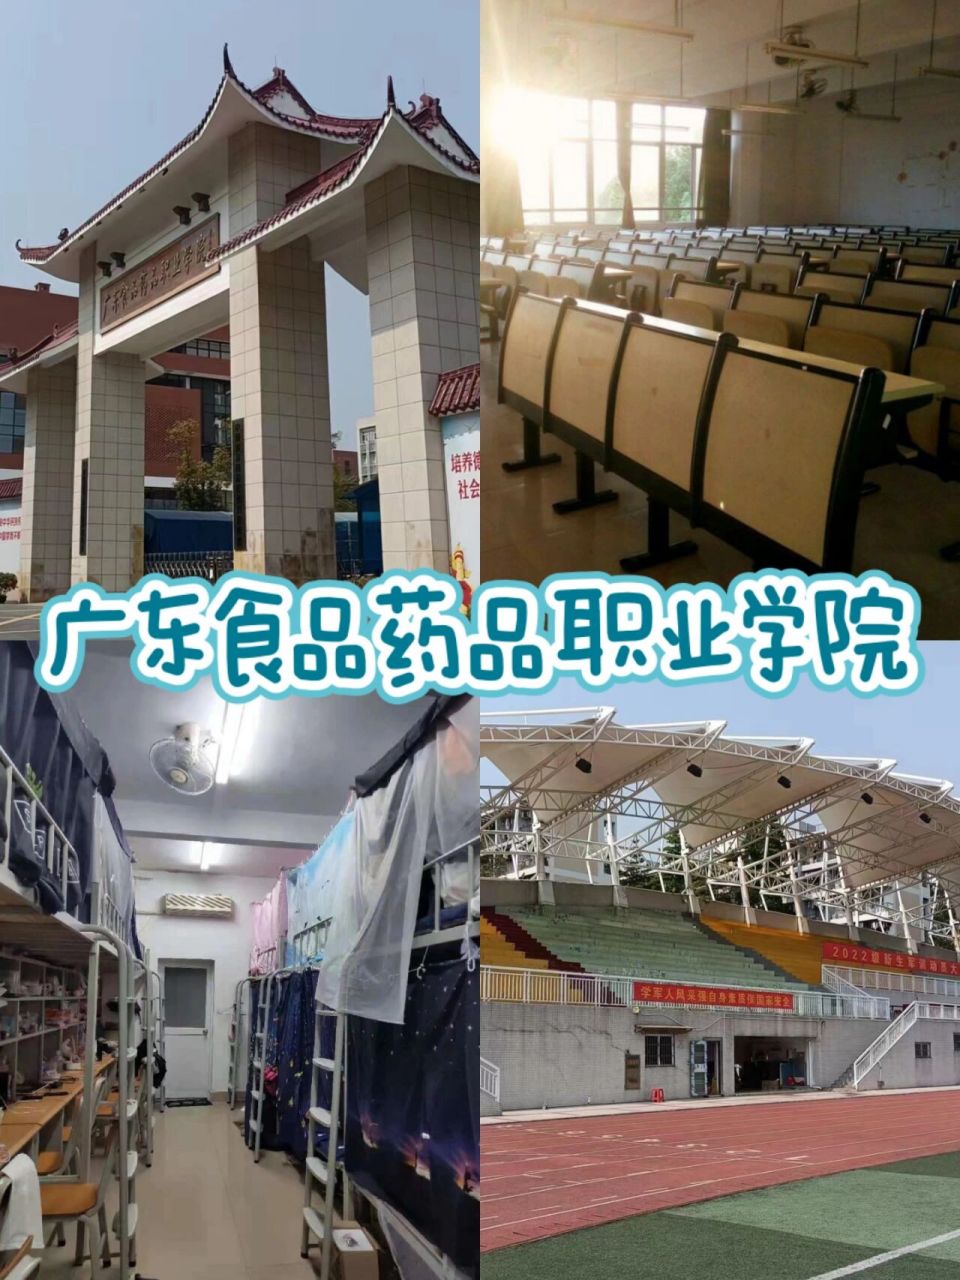 广东食品药品职业学院 73关于学校: (1)位置:我们学校位于广东省